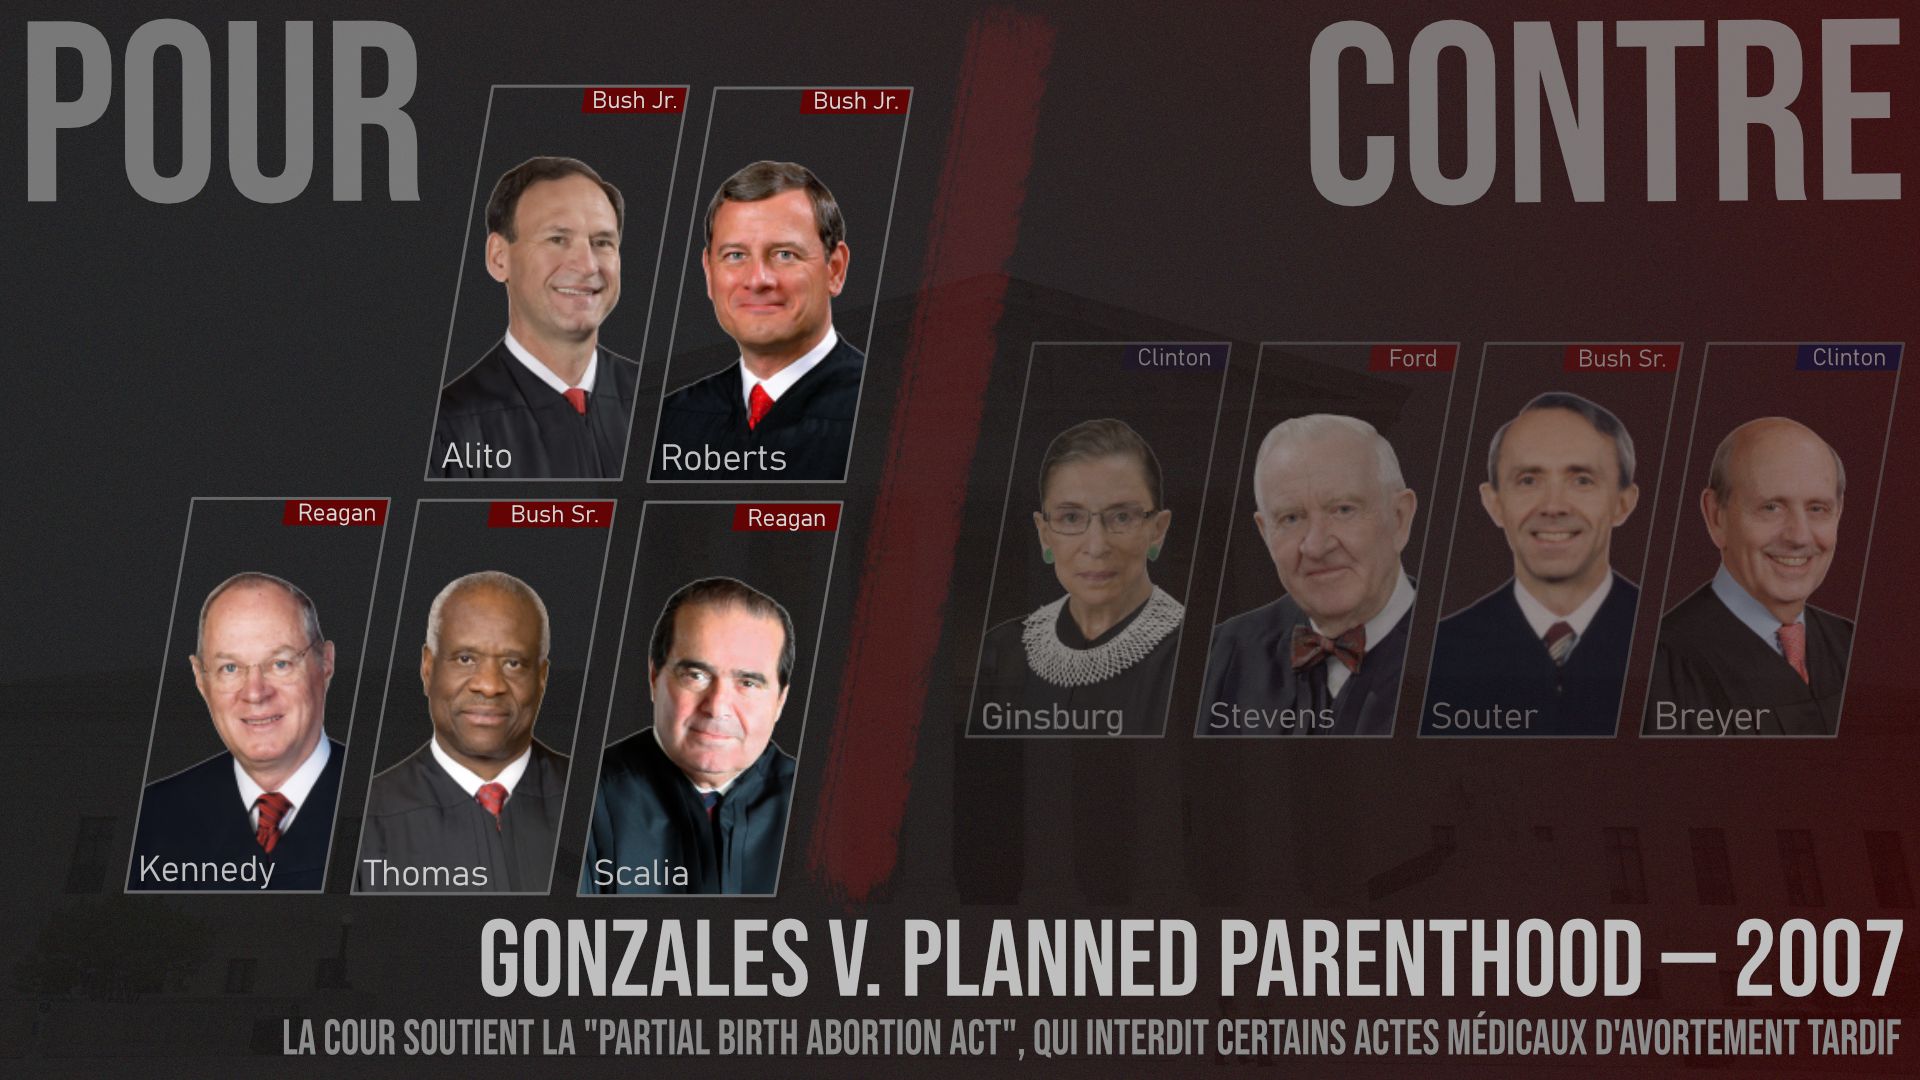 Résultat de la décision de la Cour suprême dans "Gonzales v. Planned Parenthood" (2007). Pour chaque juge, le président qui l’a nommé, et sa couleur politique : rouge = républicain ; bleu = démocrate.